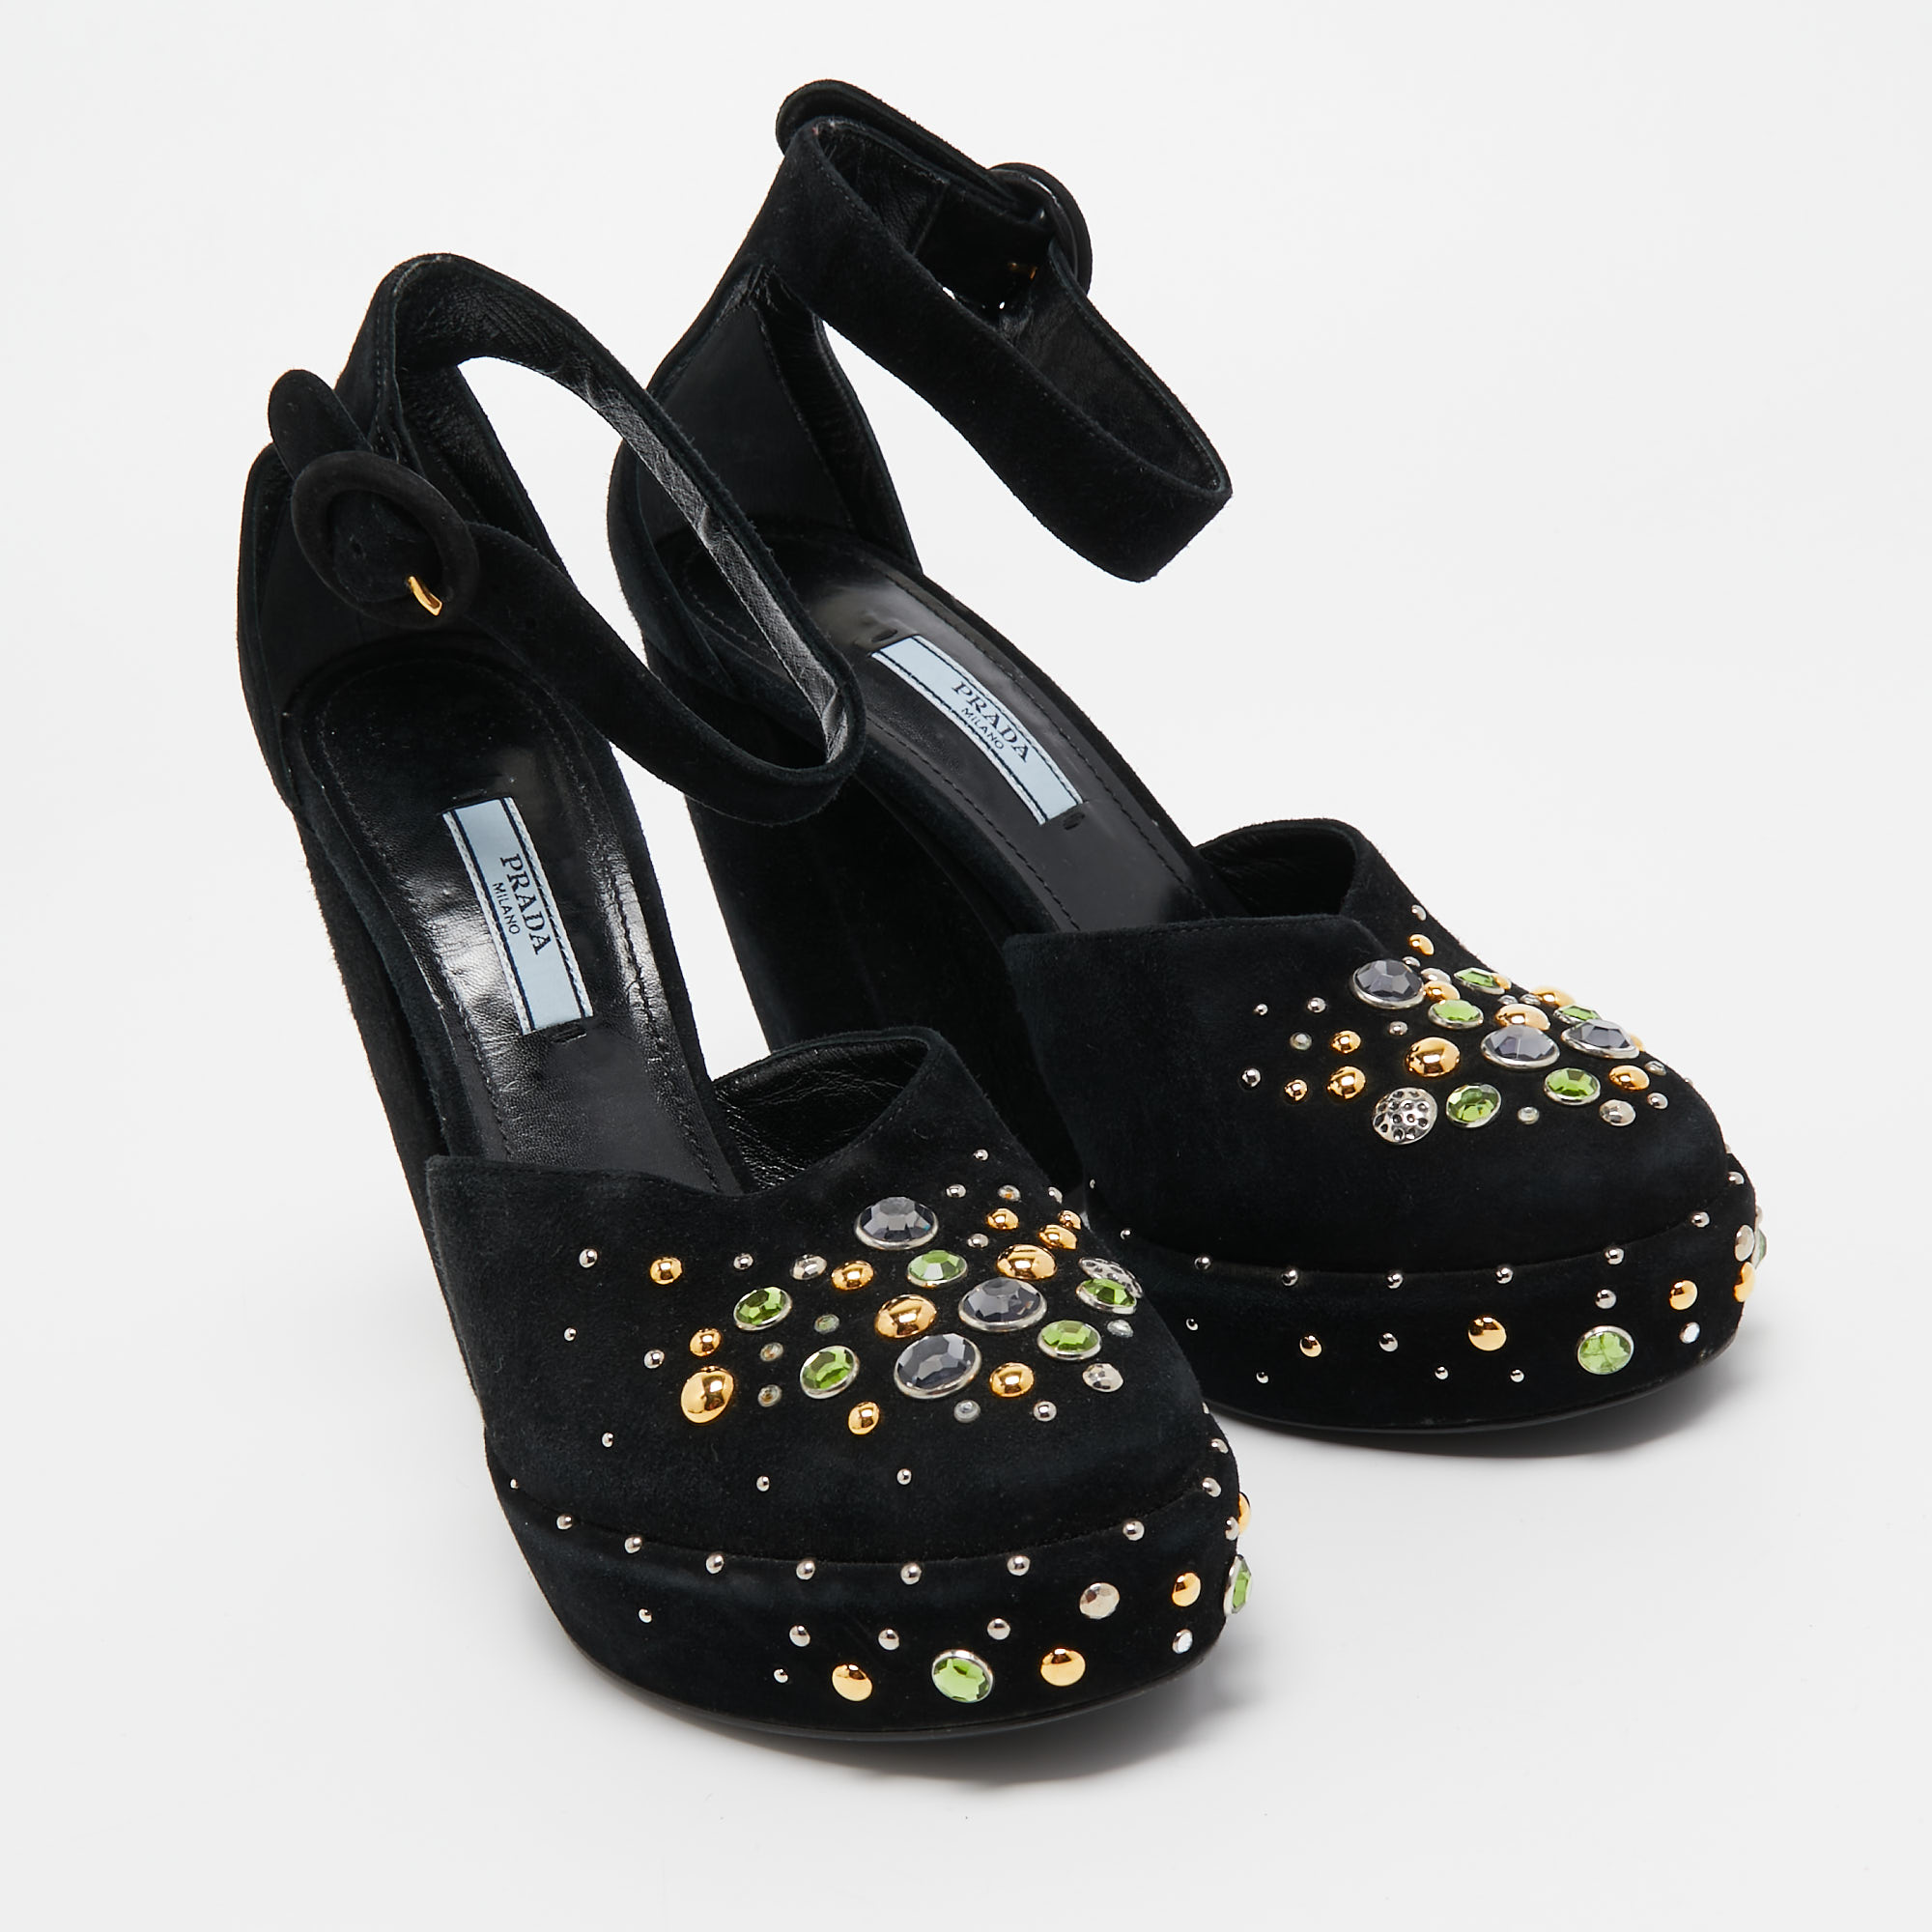 Prada Black Suede Crystal Embellished Ankle Strap Pumps Size 38.5